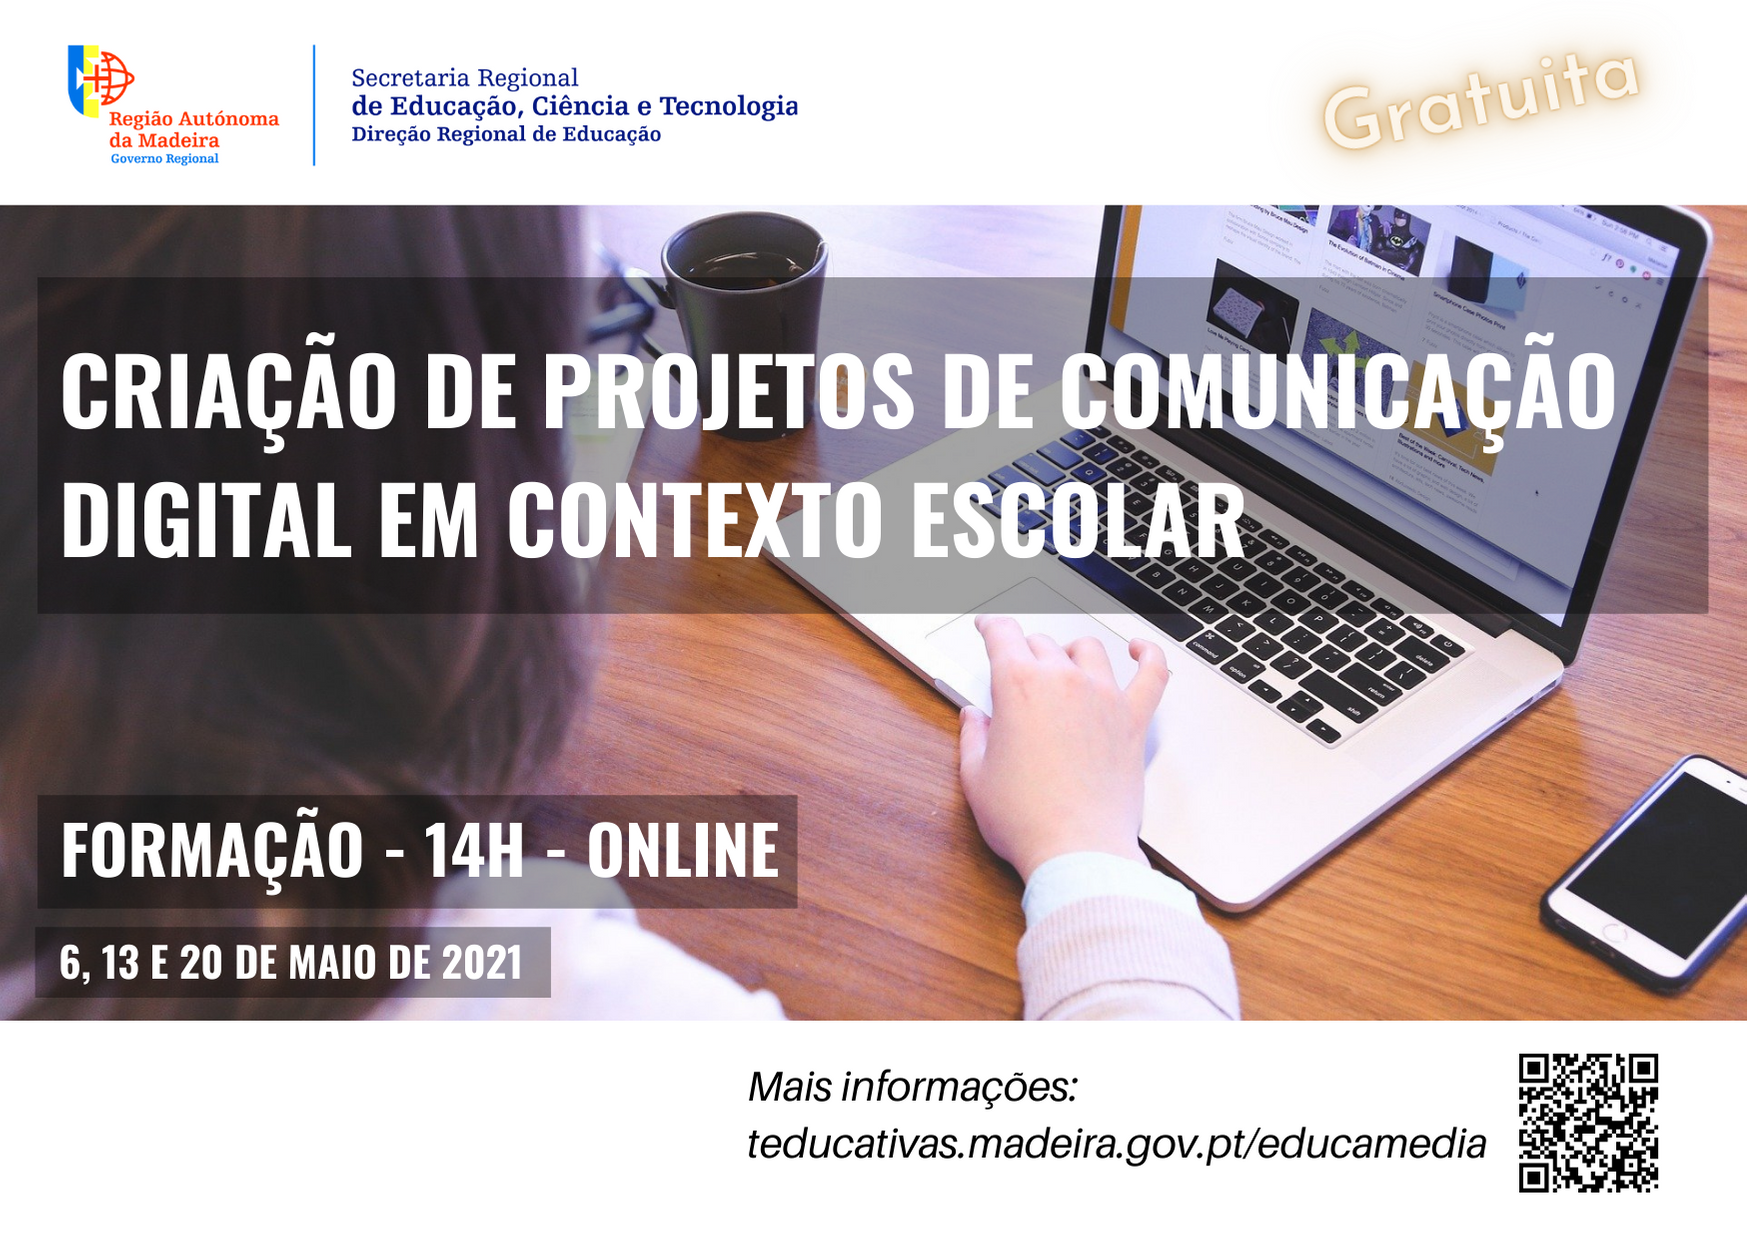 Oficina de Formação “Criação de Projetos de Comunicação Digital em Contexto Escolar”